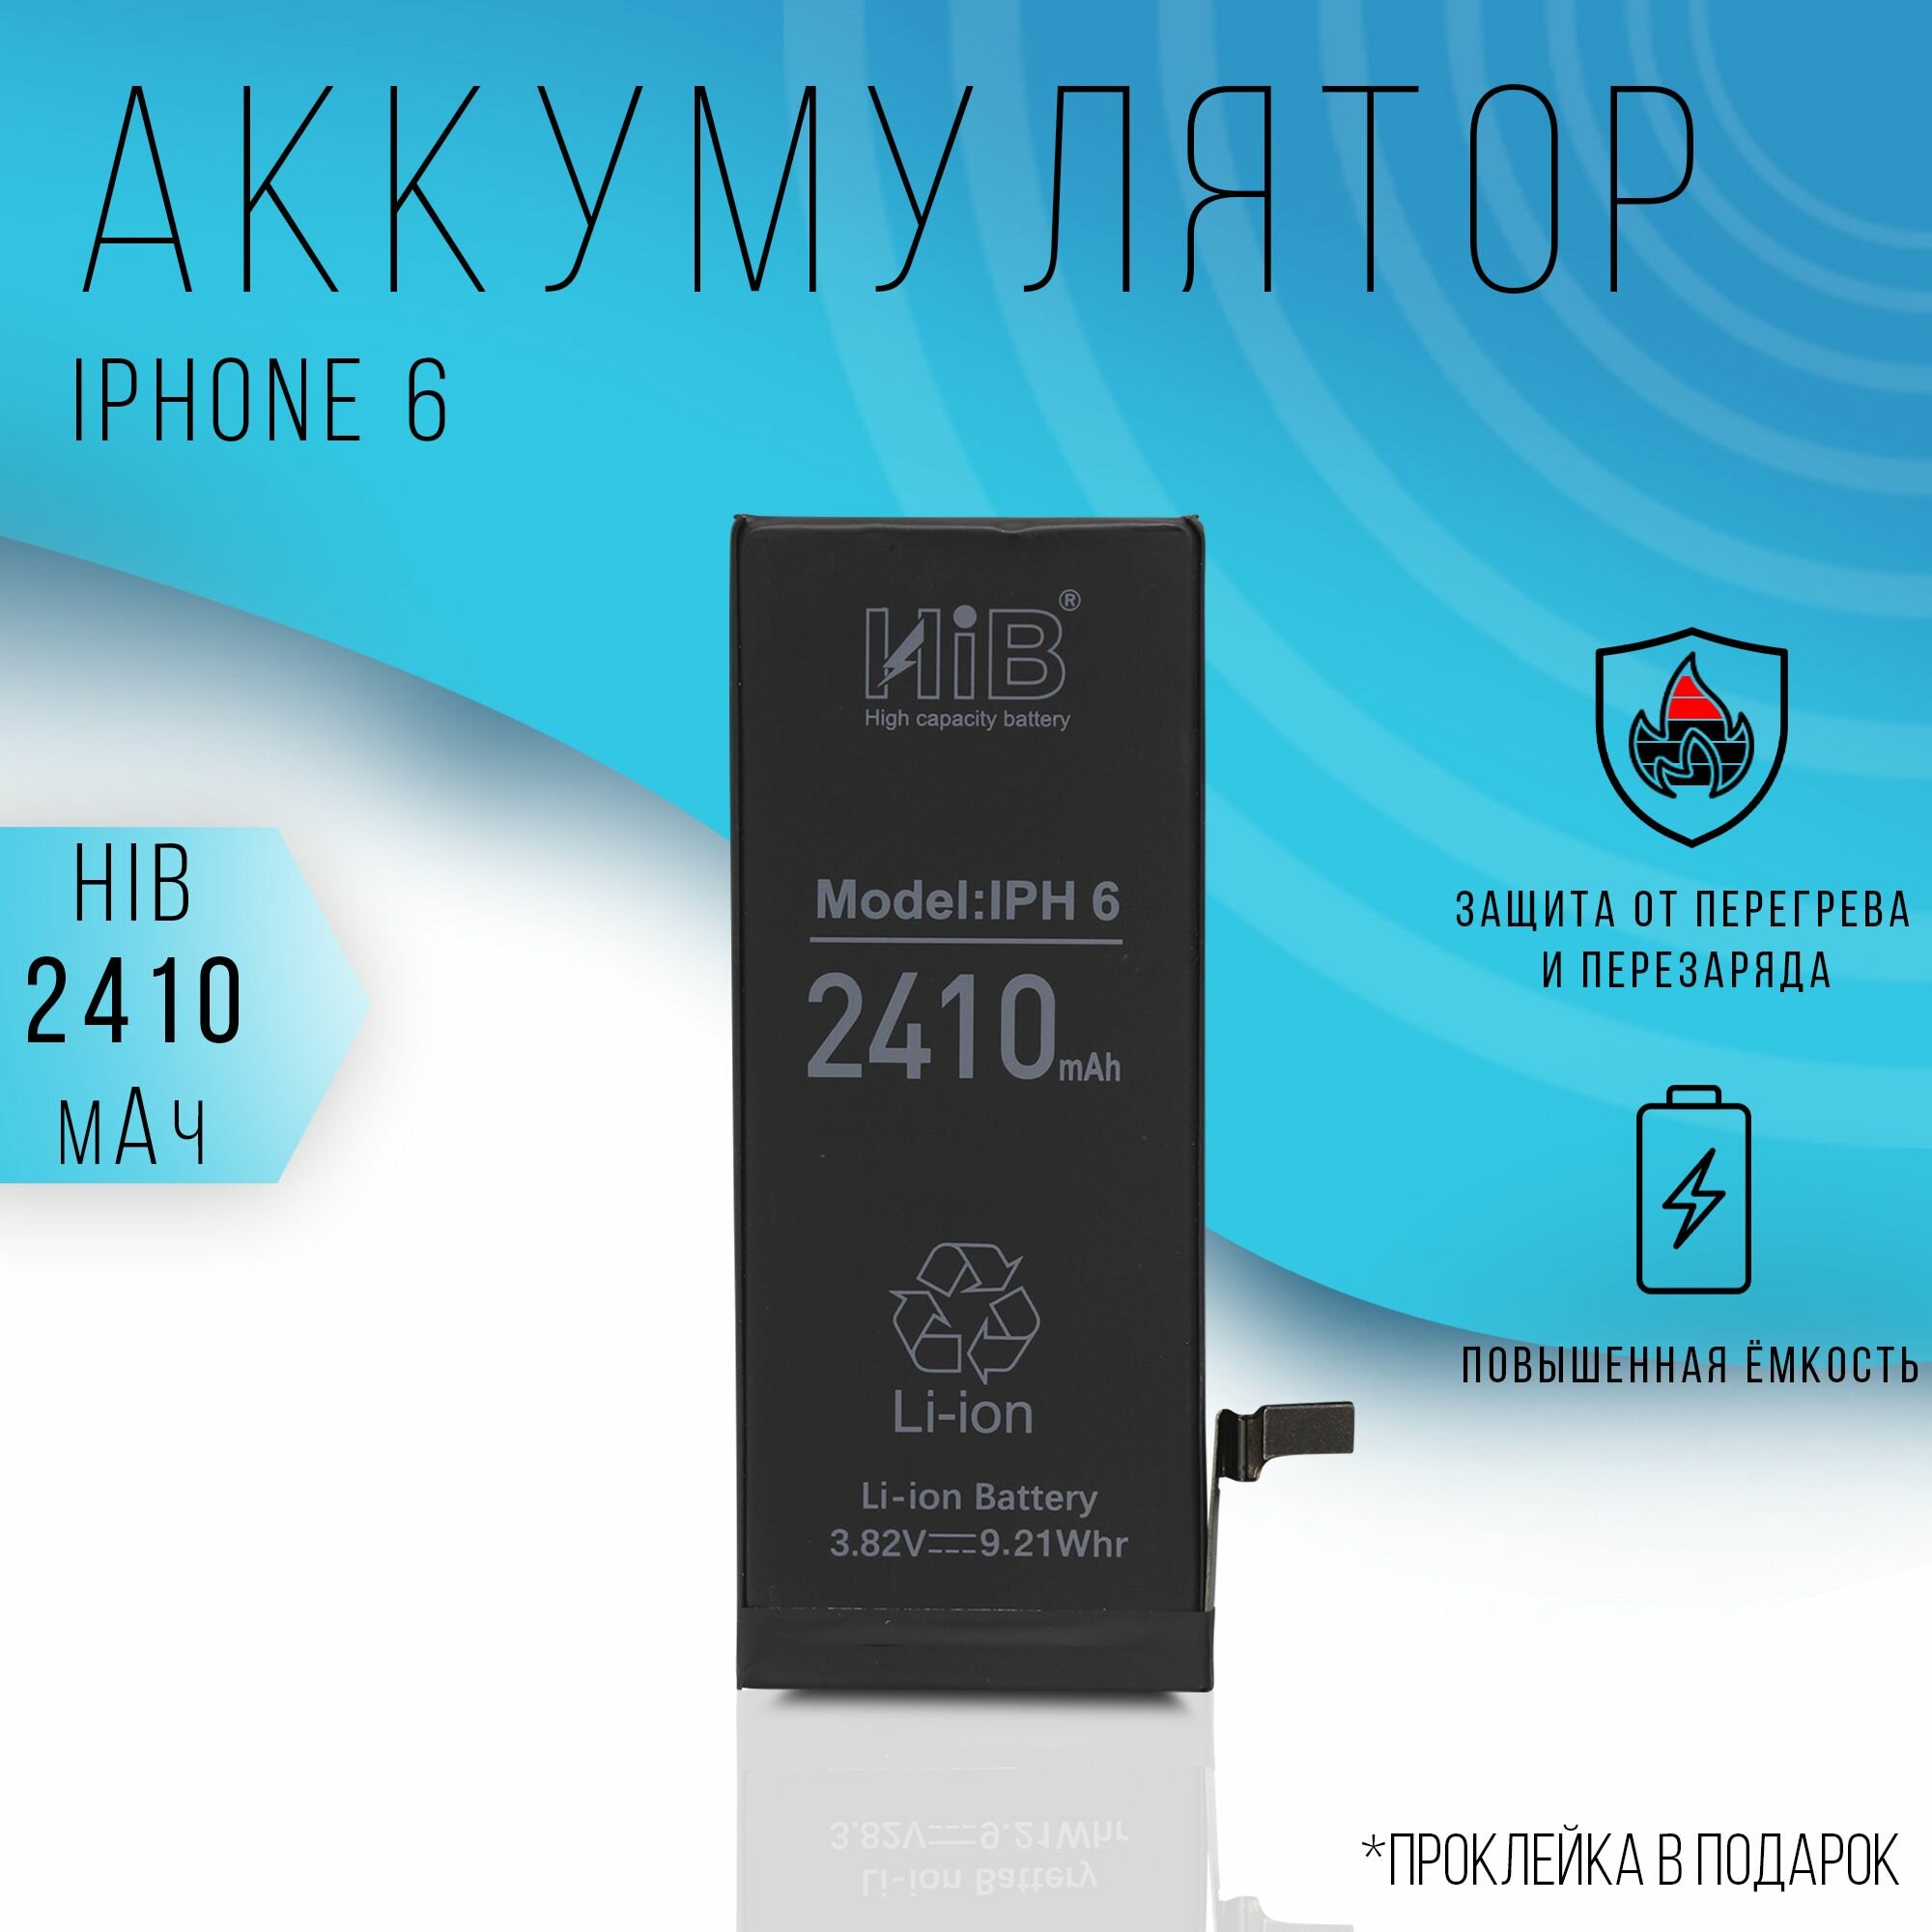 Аккумулятор HIB iPhone 6 c повышенной емкостью